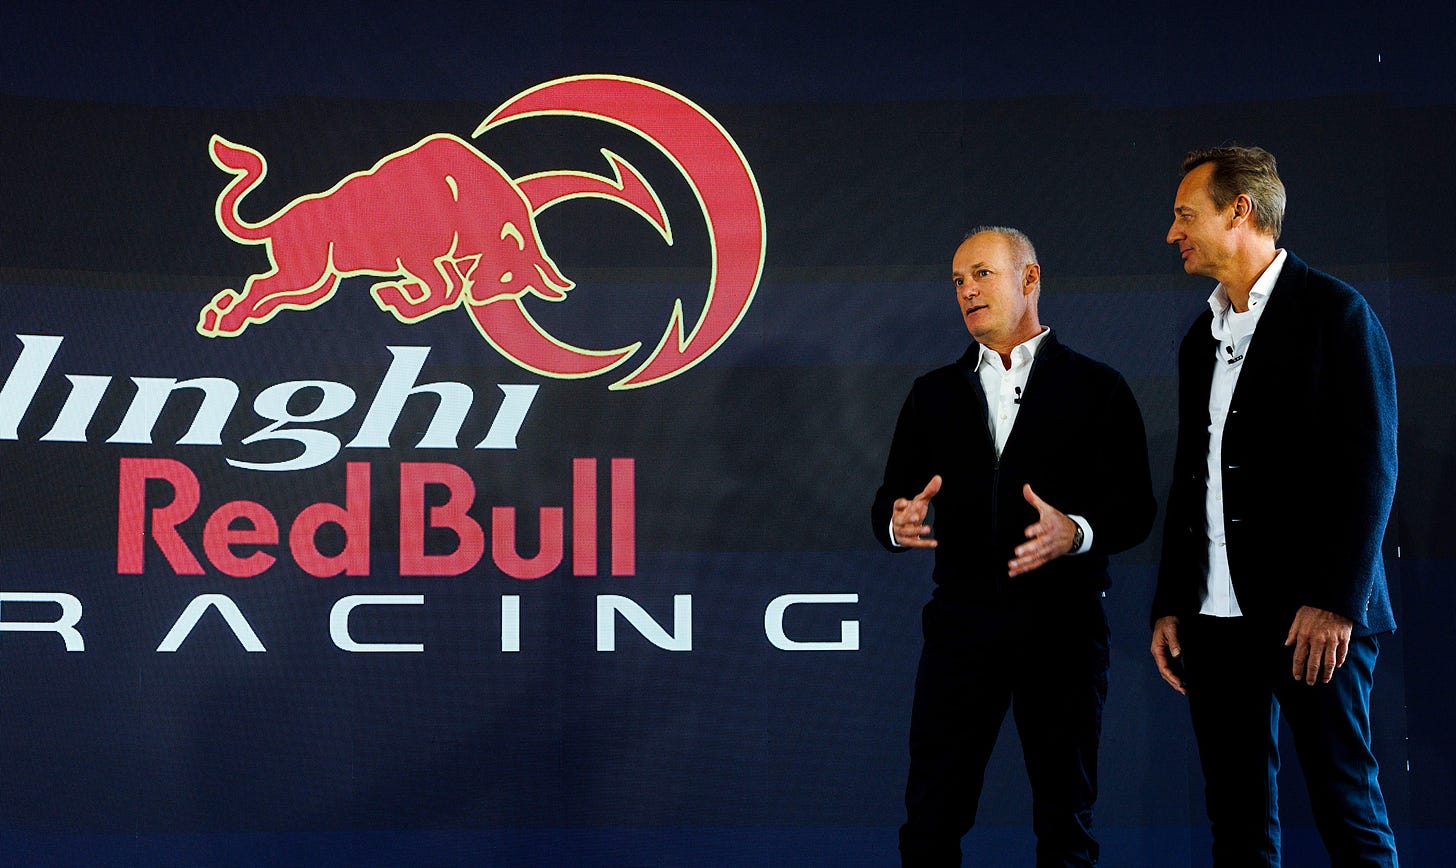 Ernesto Bertarelli und Hans Peter Steinacher bei der Präsentation des Team Alinghi Red Bull Racing